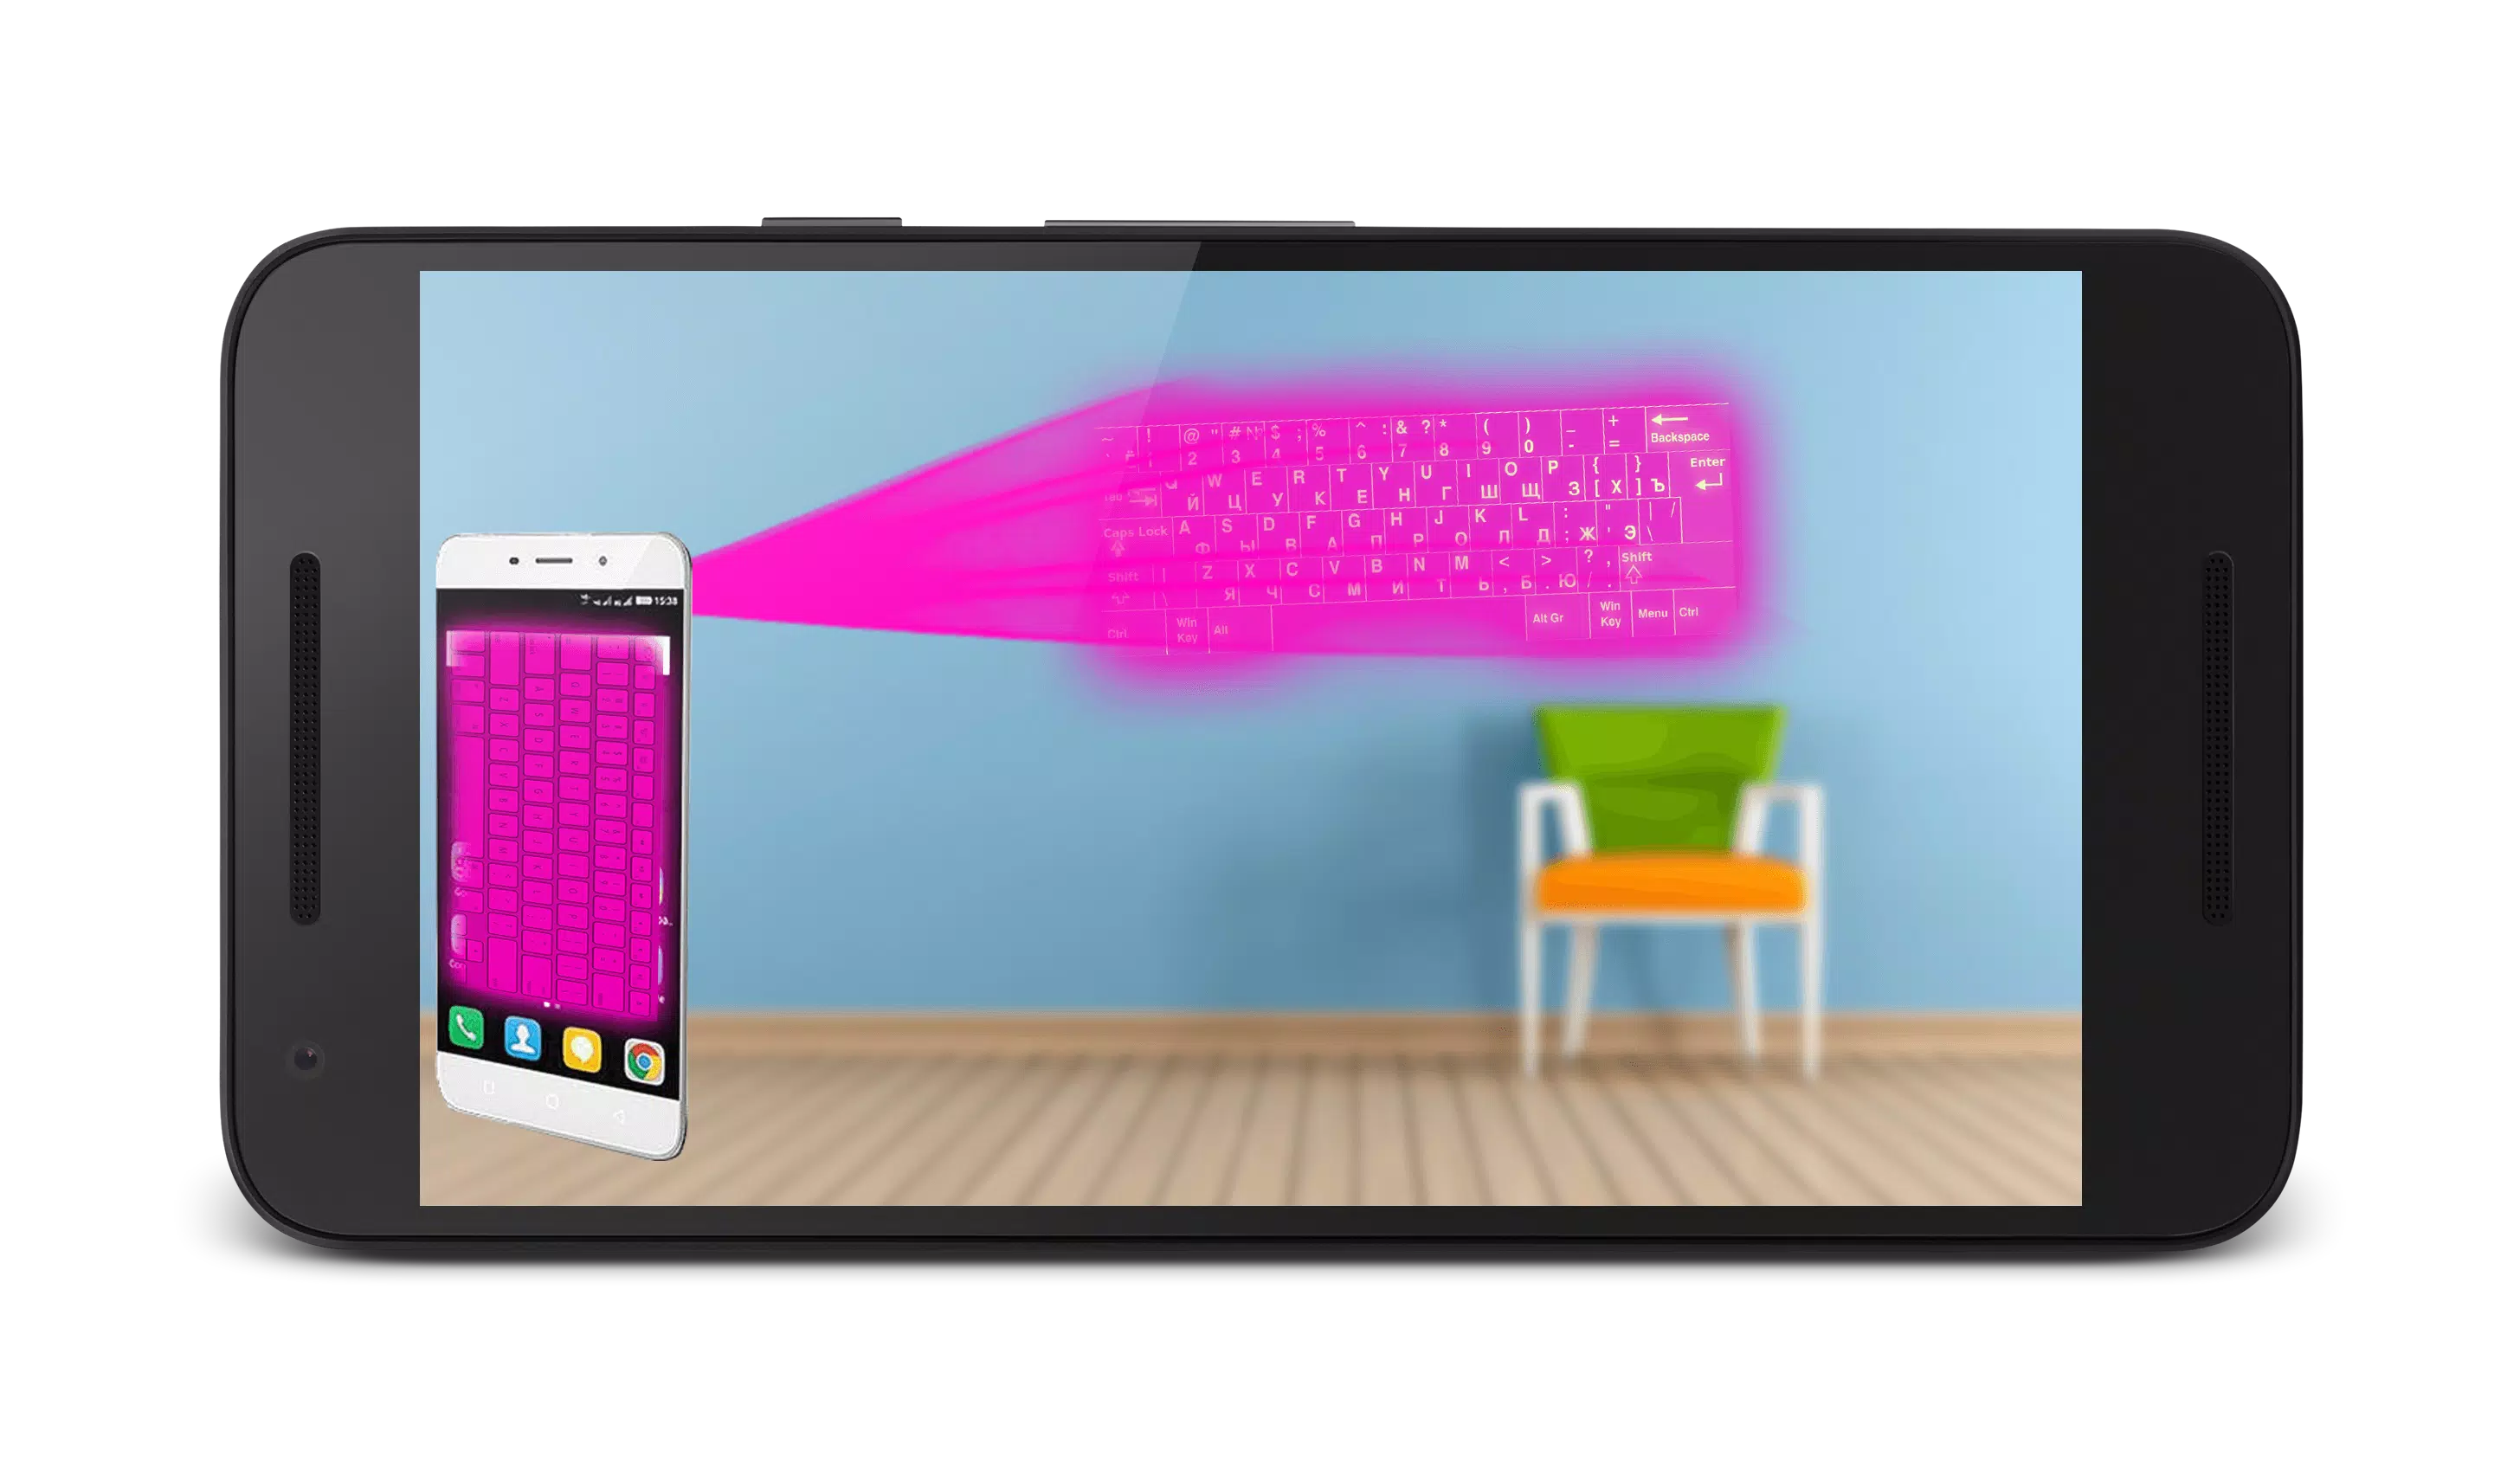 Descarga de APK de Emulador de teclado Holograma para Android